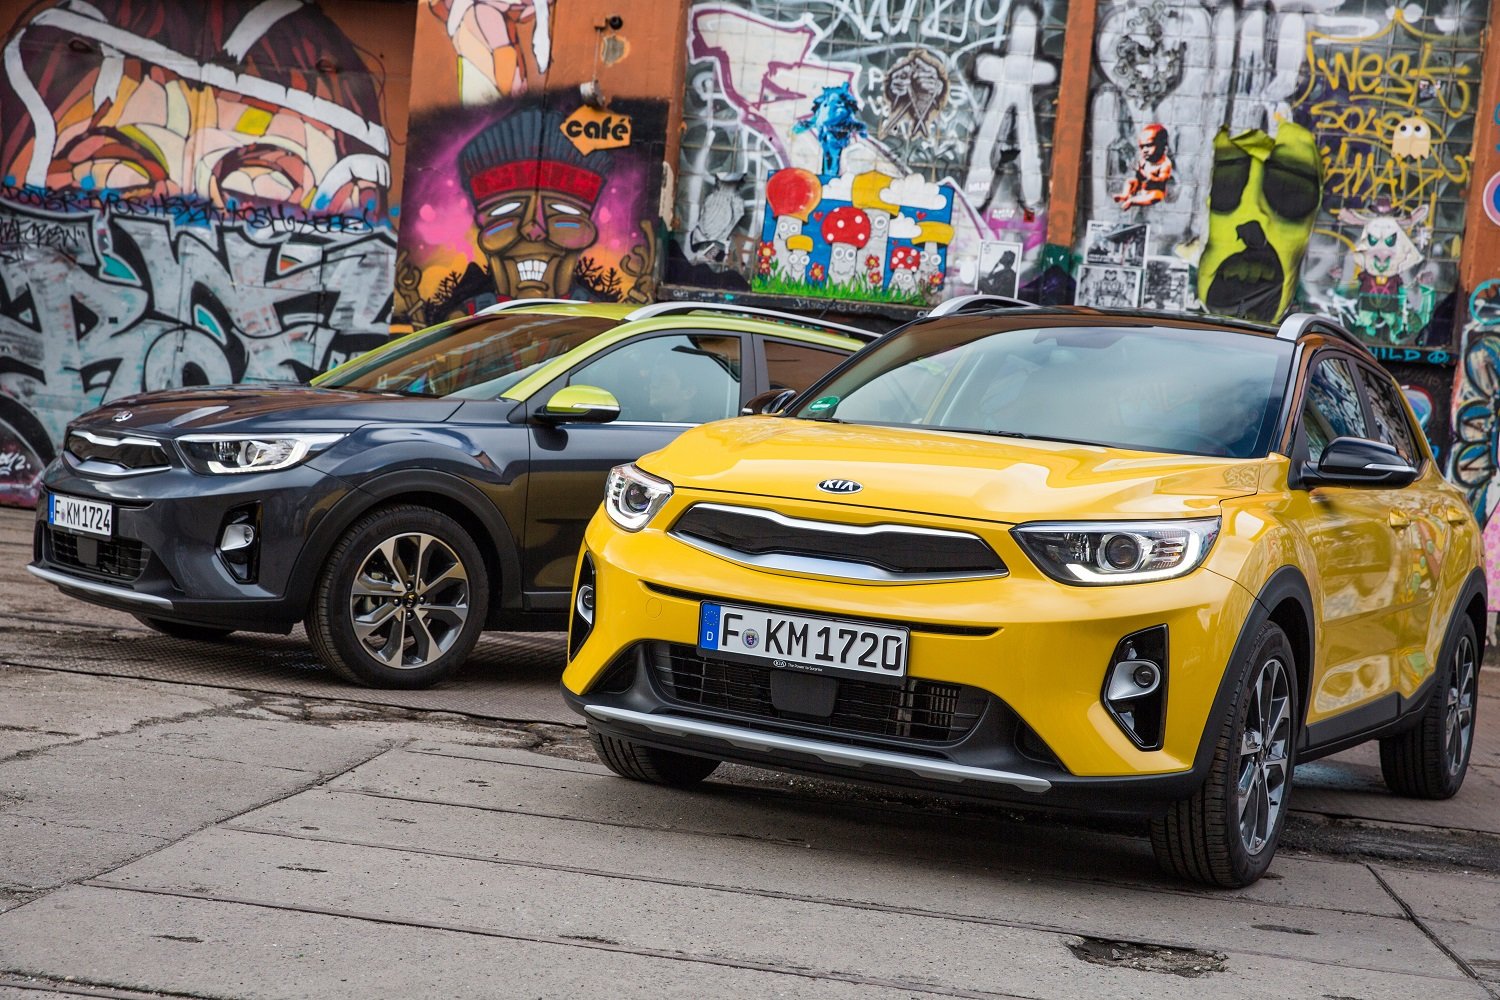 Nové kompaktní SUV Kia Stonic přichází na český trh s velkými ambicemi